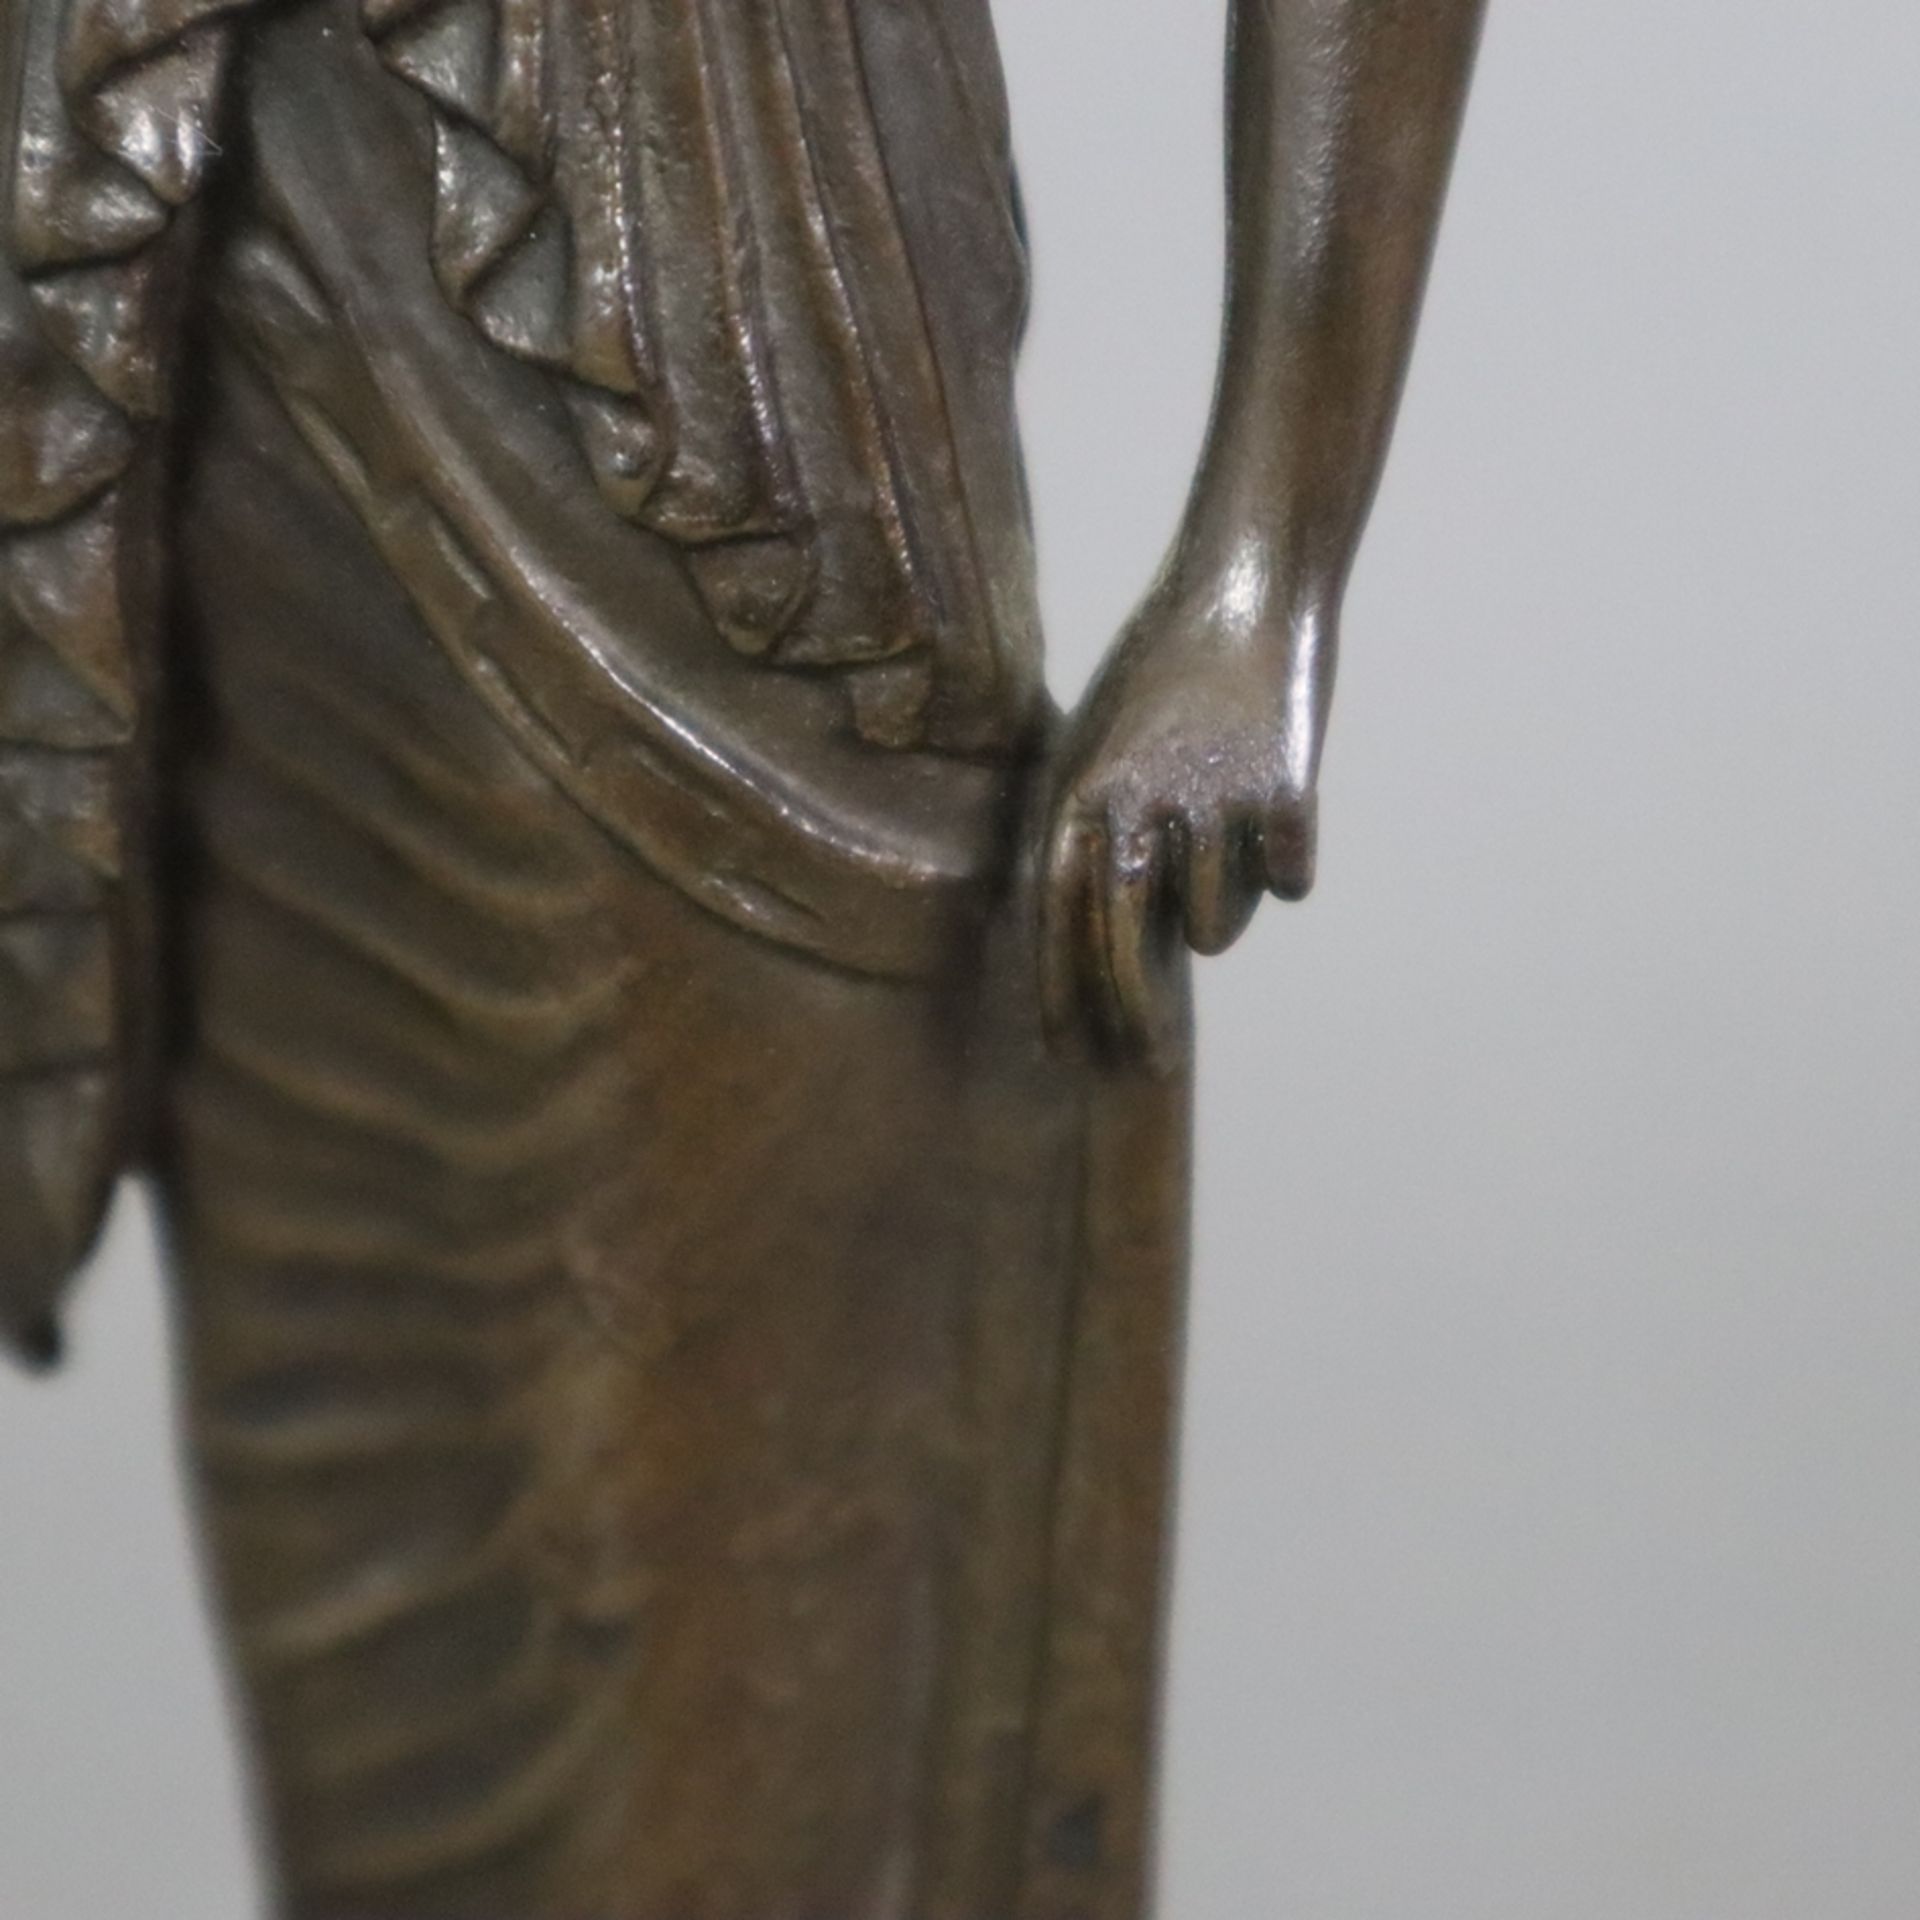 Figurine einer antiken Priesterin - Bronze, braun patiniert, antikisierende Frauenfigur mit Diadem, - Bild 5 aus 8